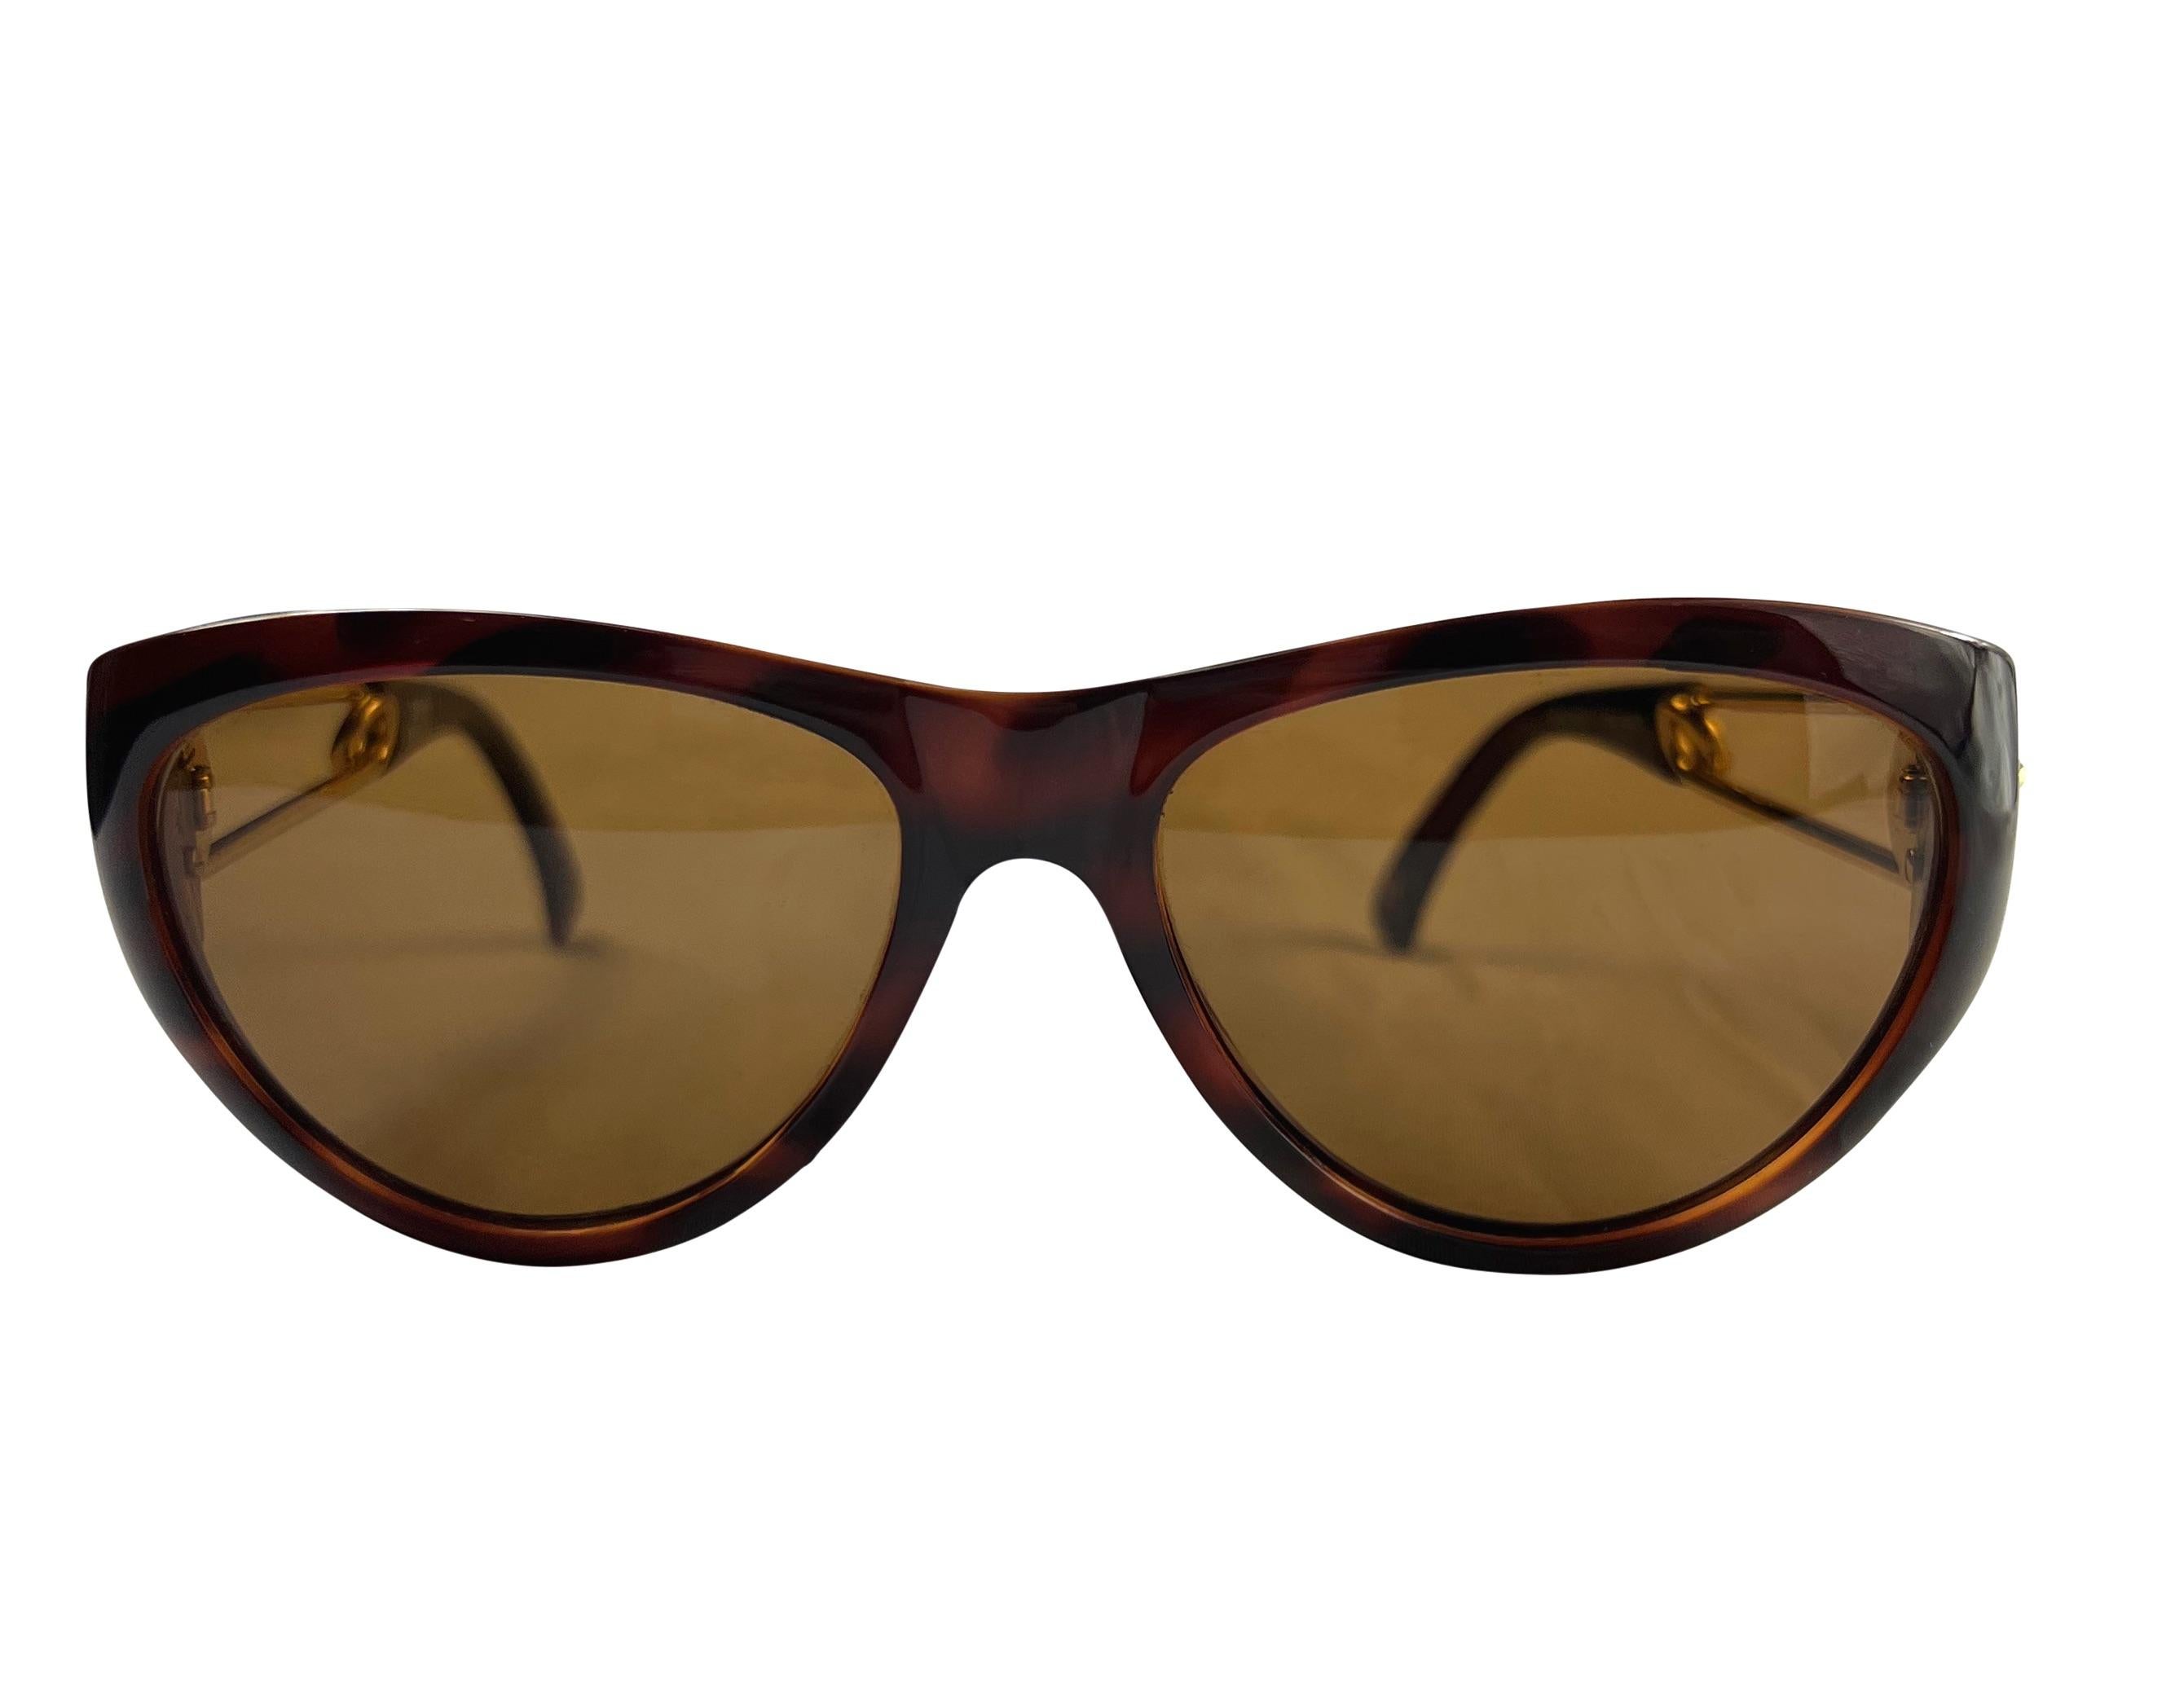 Nous vous présentons une paire de lunettes de soleil Gianni Versace, marron et or, conçue par Gianni Versace. Issues de la collection printemps/été 1994, ces lunettes de soleil présentent un design subtil en forme d'œil de chat et le célèbre motif